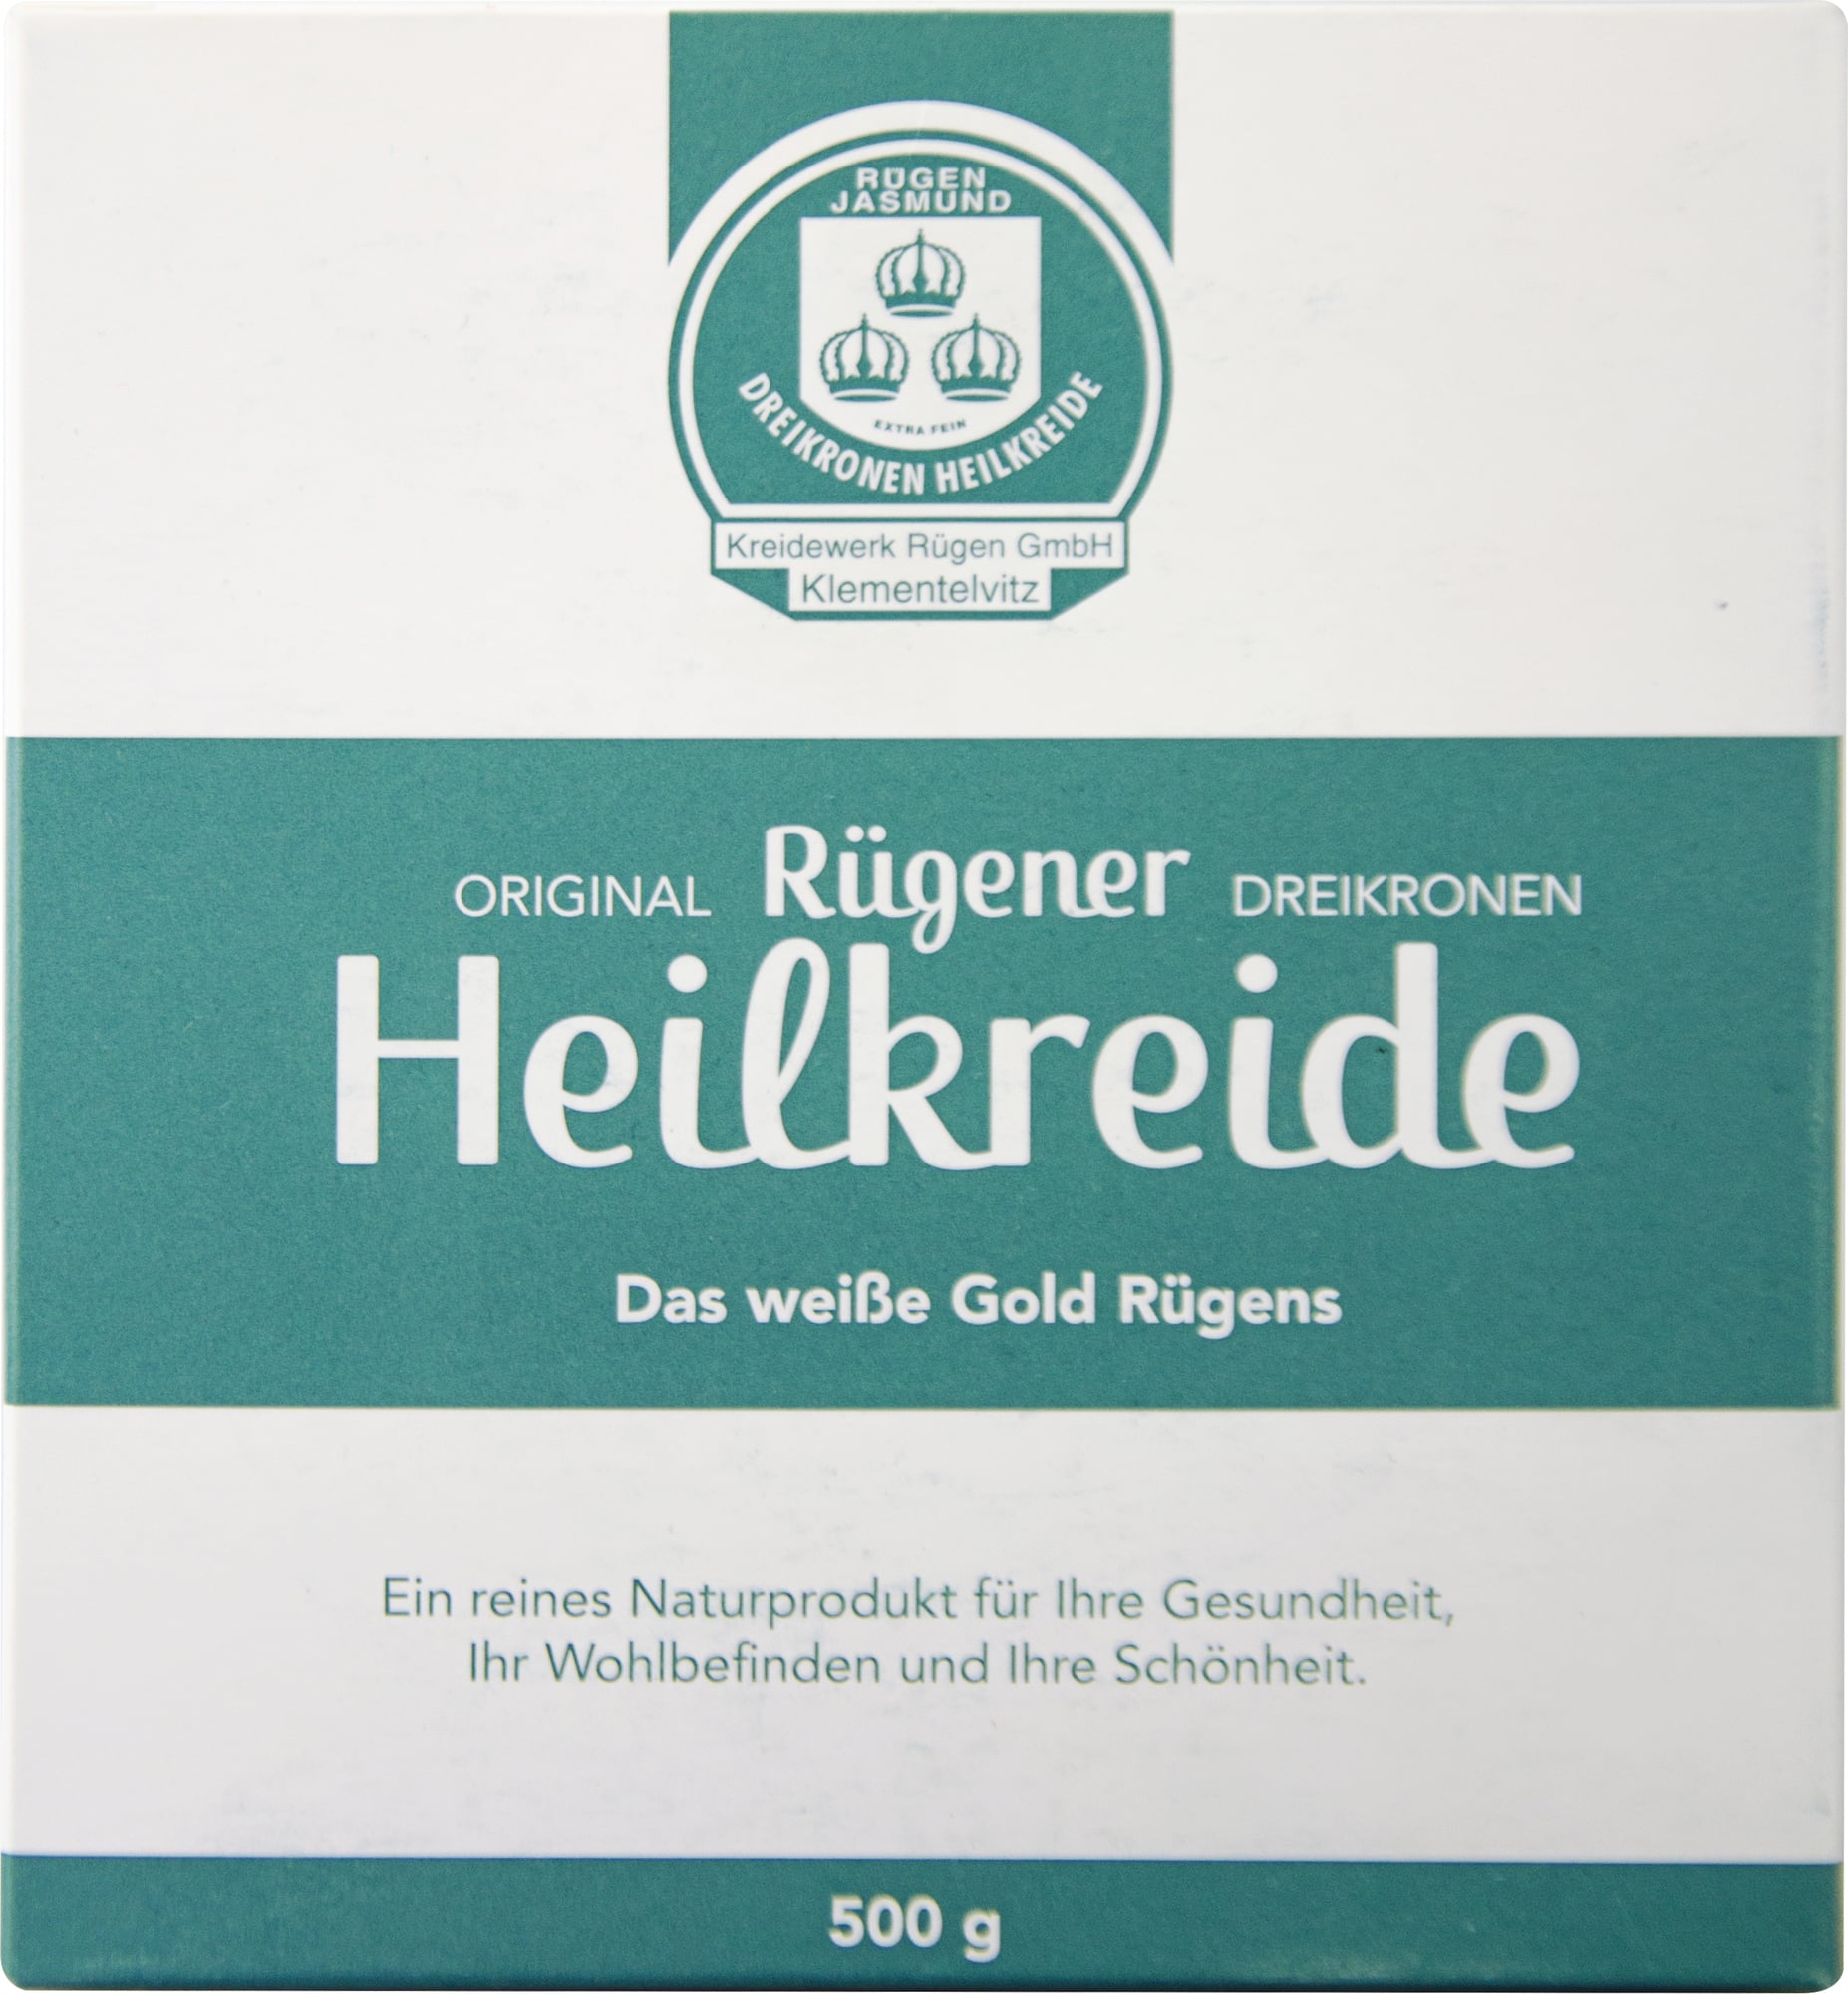 CMD Naturkosmetik Original Rügener Chalkstone - 500 g